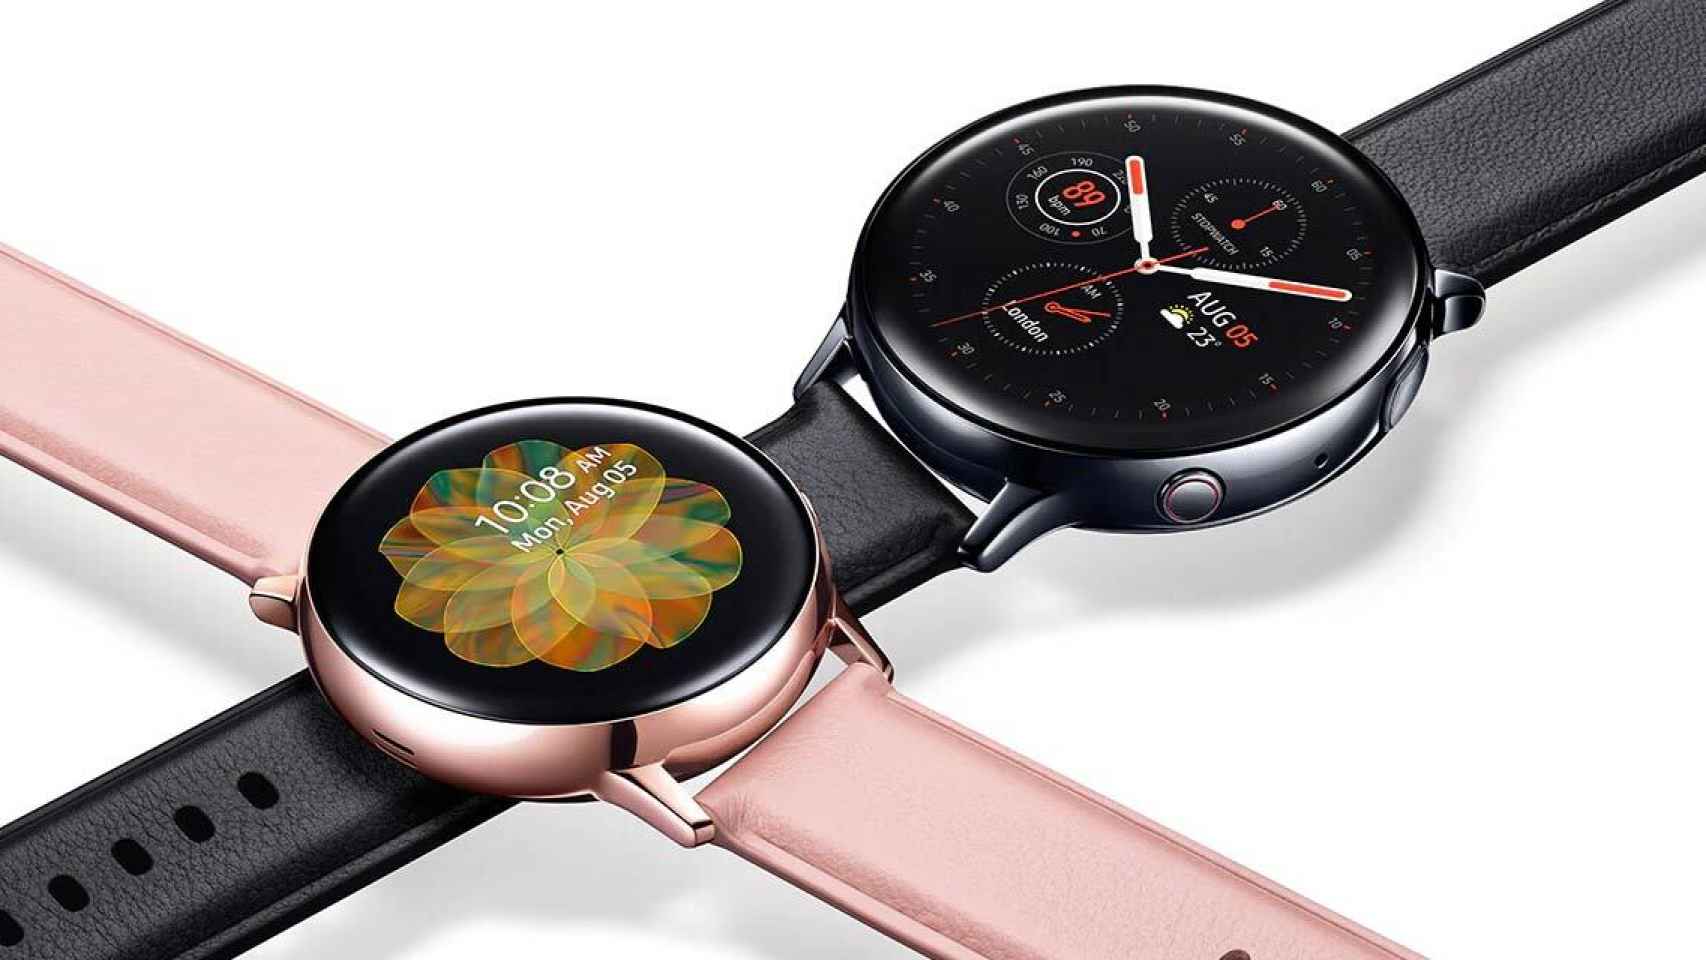 El Samsung Galaxy Watch Active 2 retrasaría a 2020 dos de sus características